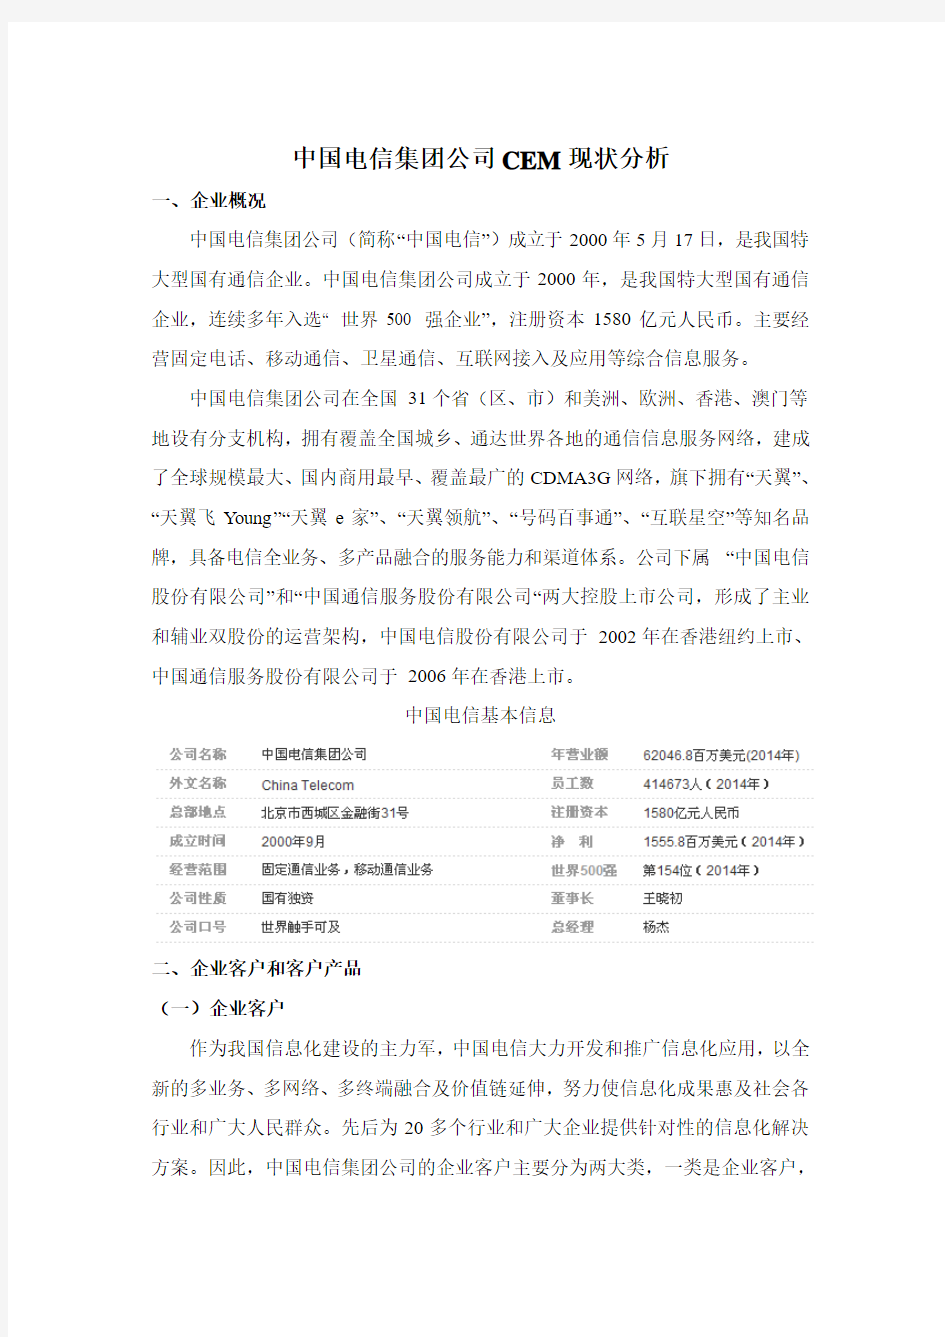 中国电信集团公司的CEM分析